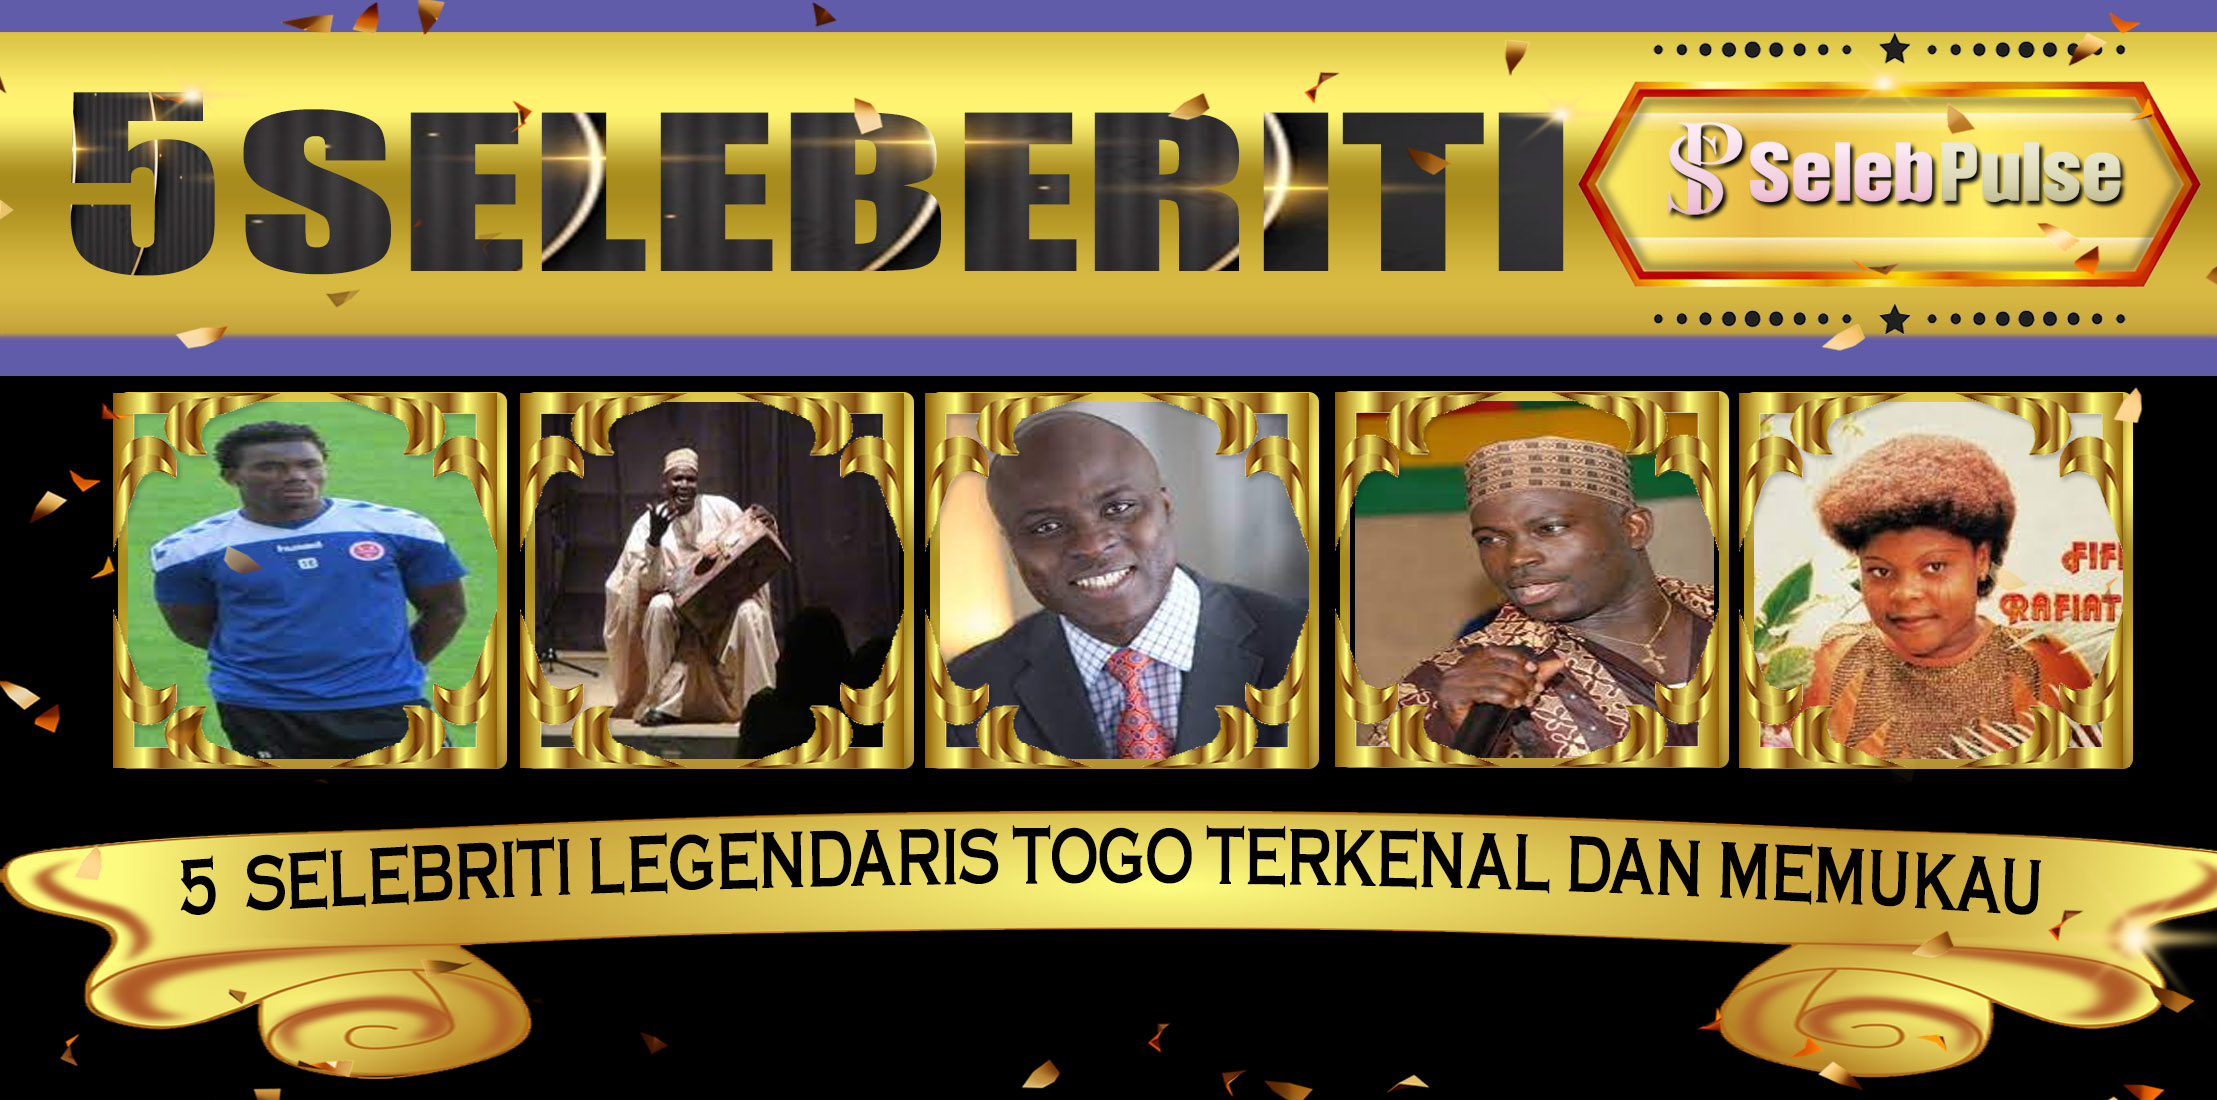 5 Selebriti Legendaris Togo